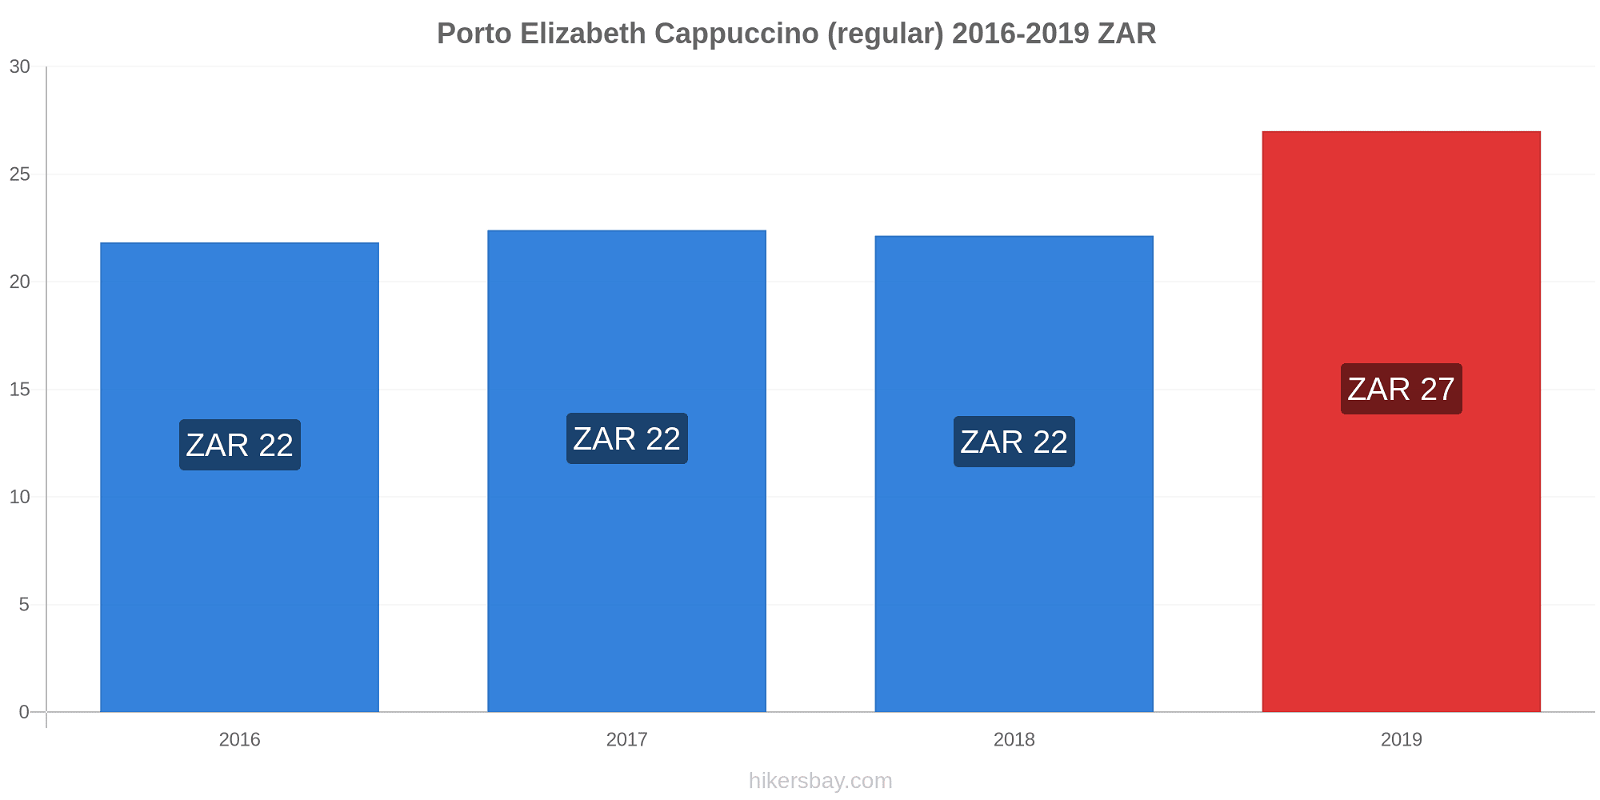 Porto Elizabeth variação de preço Capuccino (regular) hikersbay.com